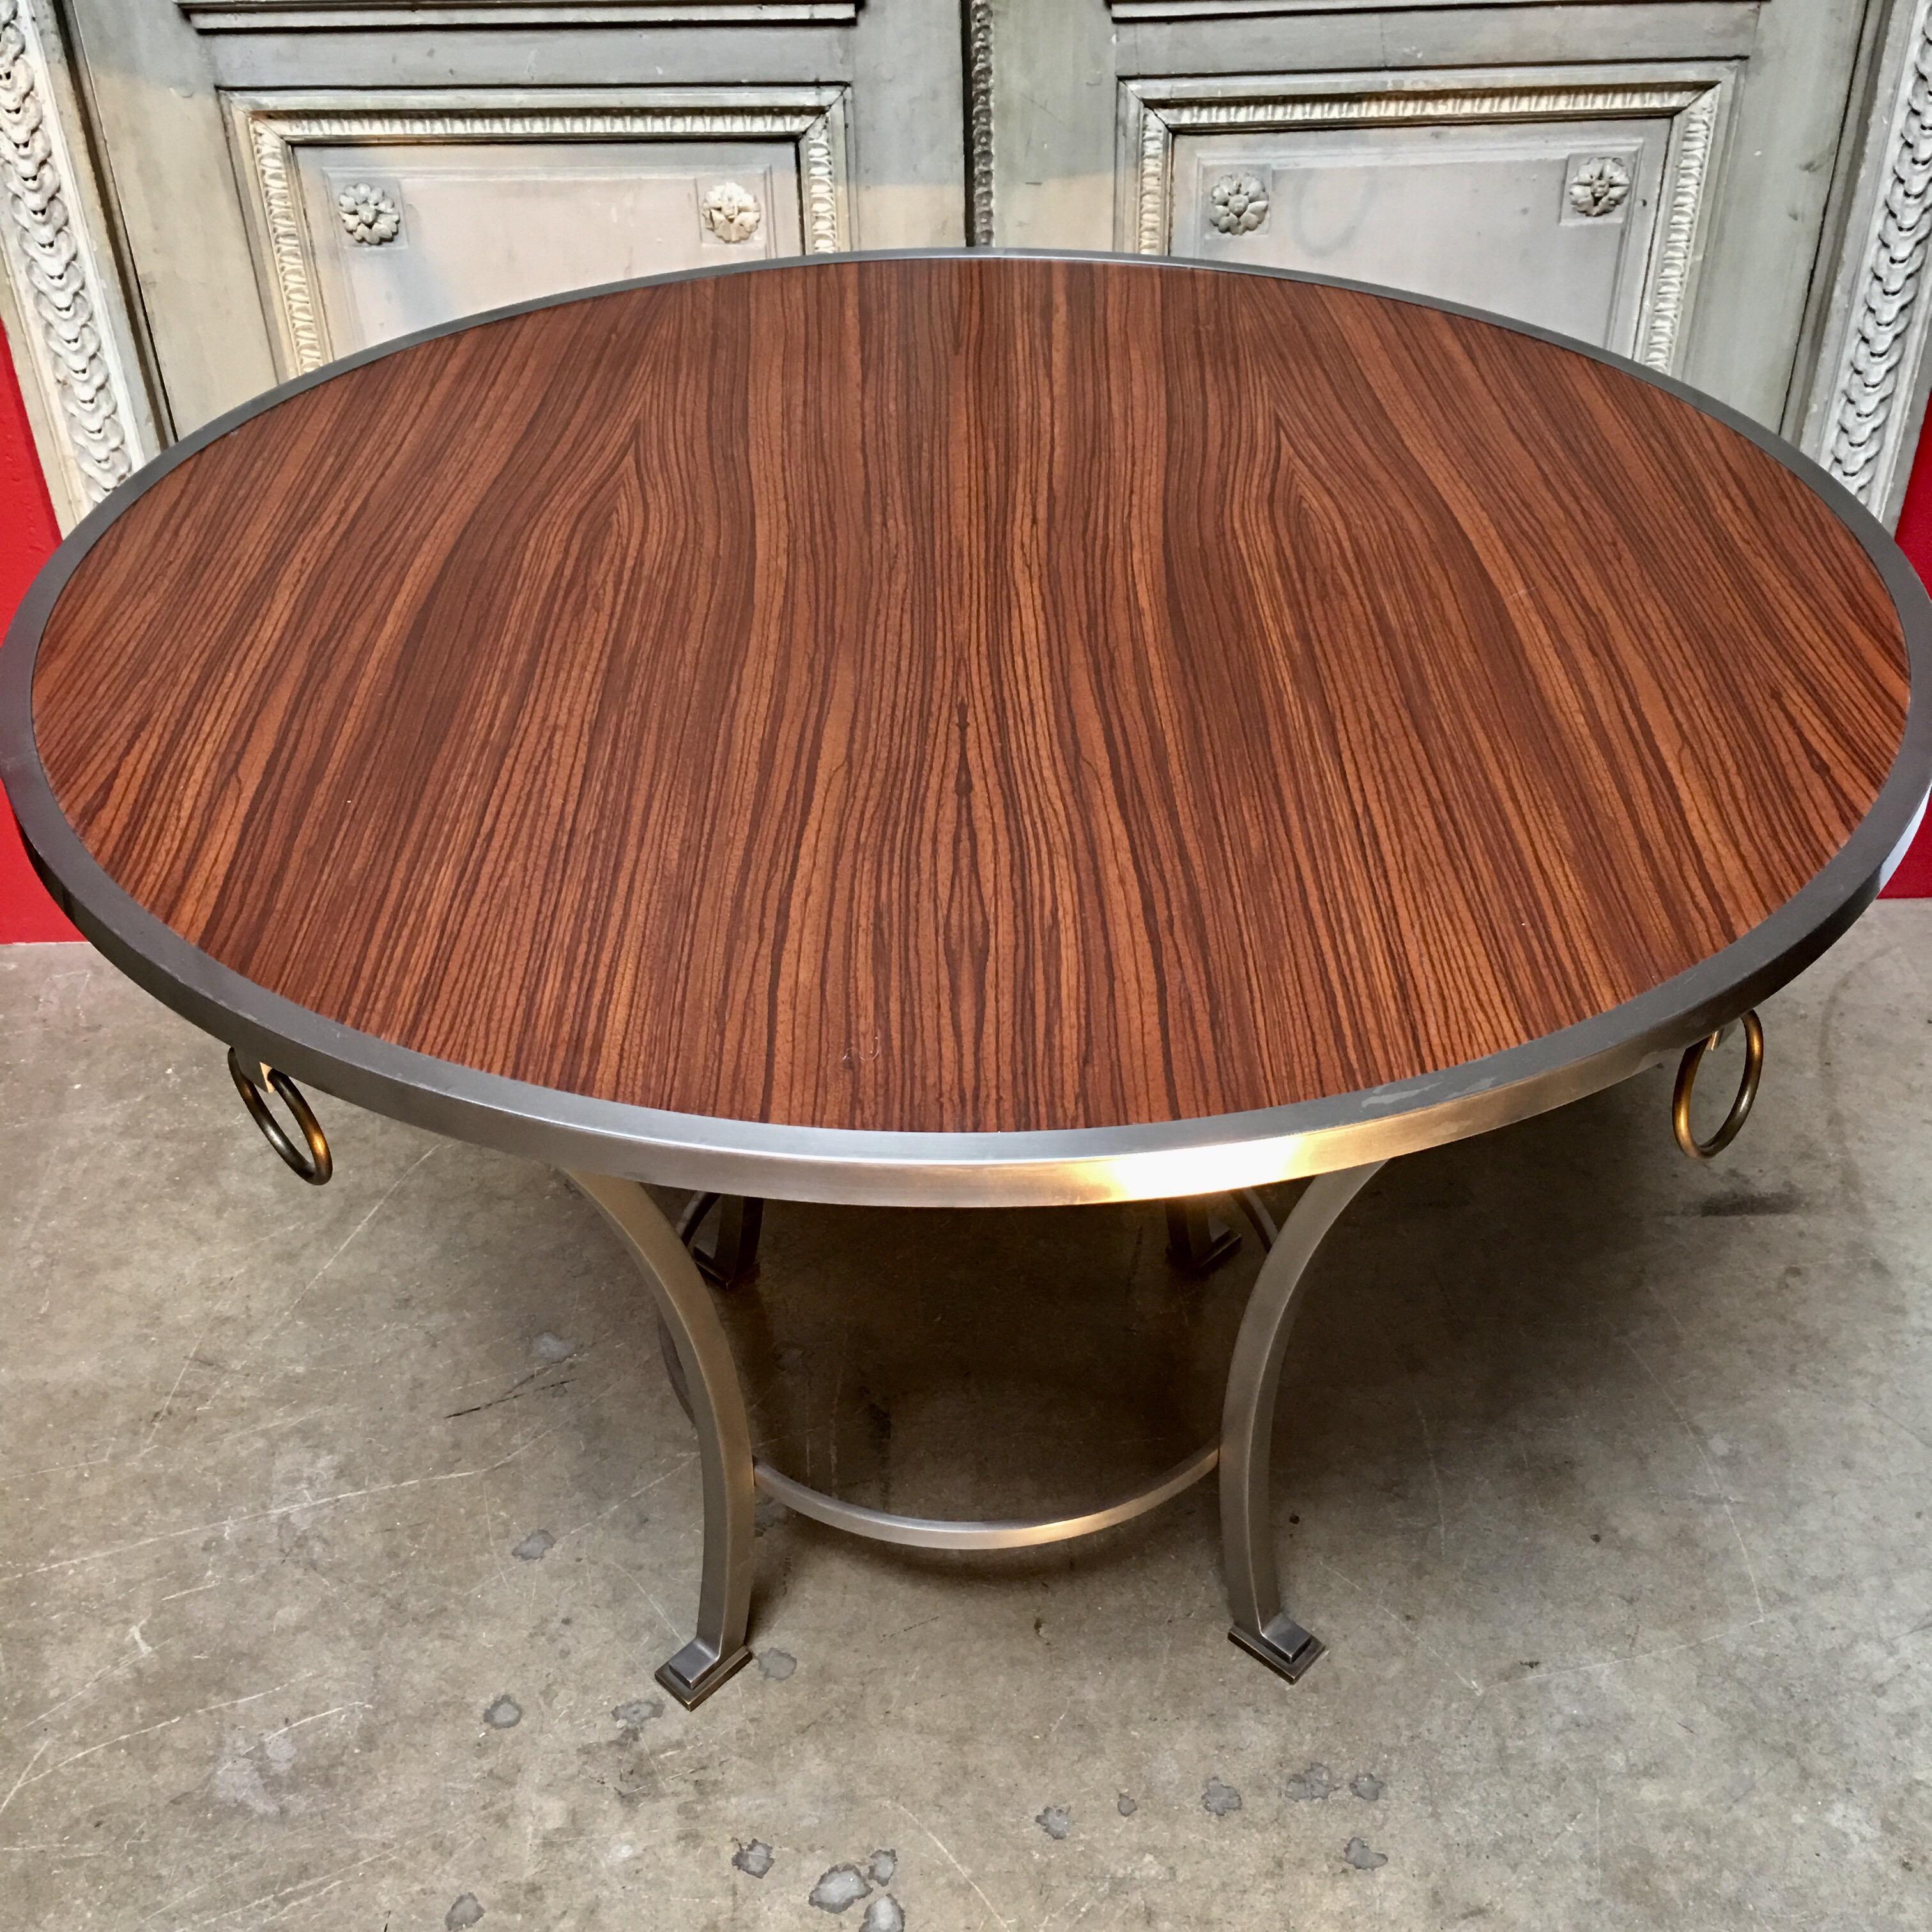 Ein moderner Tisch mit Zebraholzplatte und Stahlgestell, der als Esstisch, Mitteltisch oder Spieltisch verwendet werden kann. Der Tisch hat ein schönes, modernes Aussehen, das sowohl zu modernen als auch zu traditionellen Designs passt. 